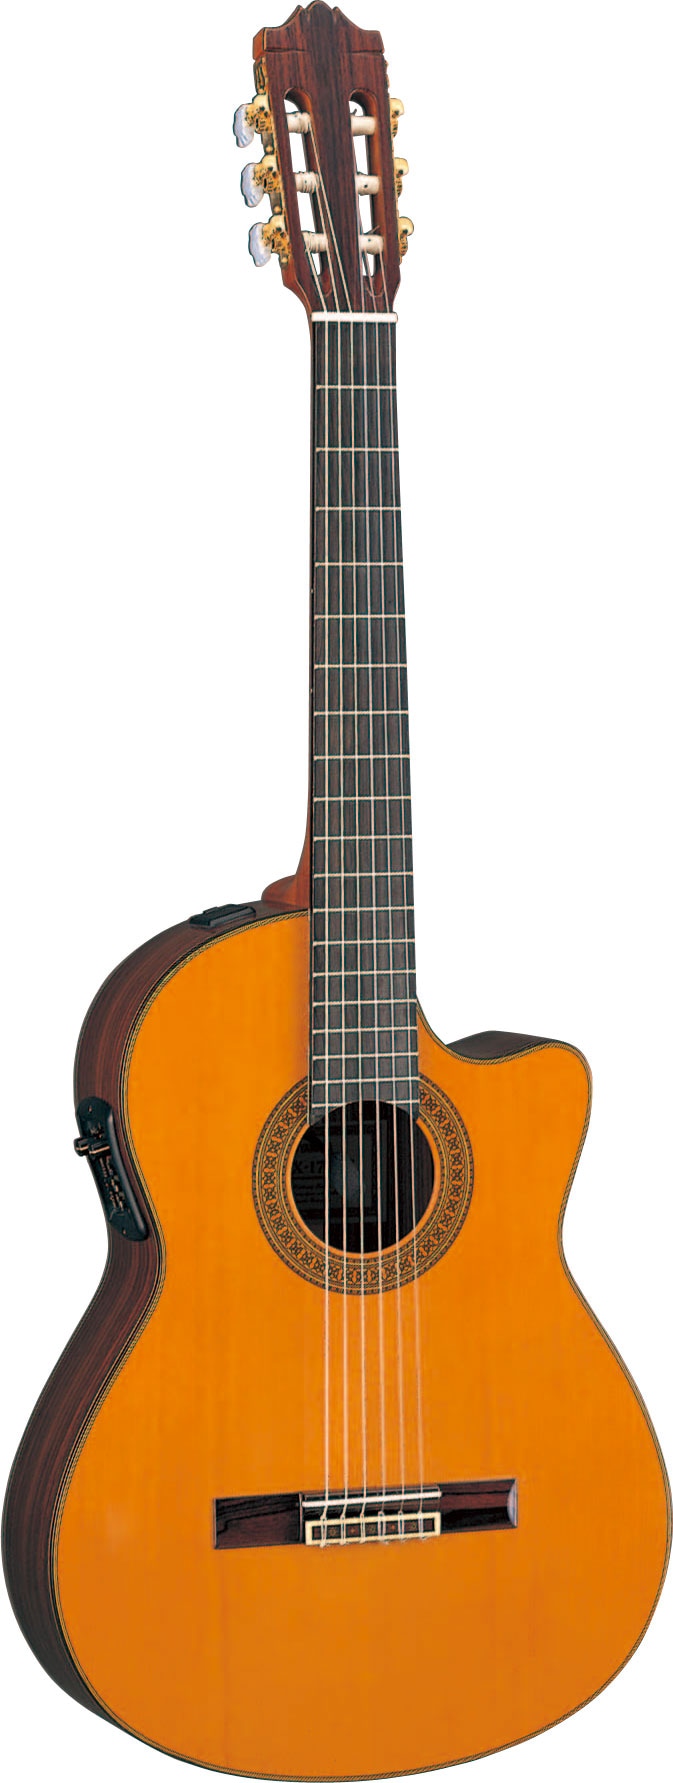 YAMAHA(ヤマハ)CGX171CC エレガットギター